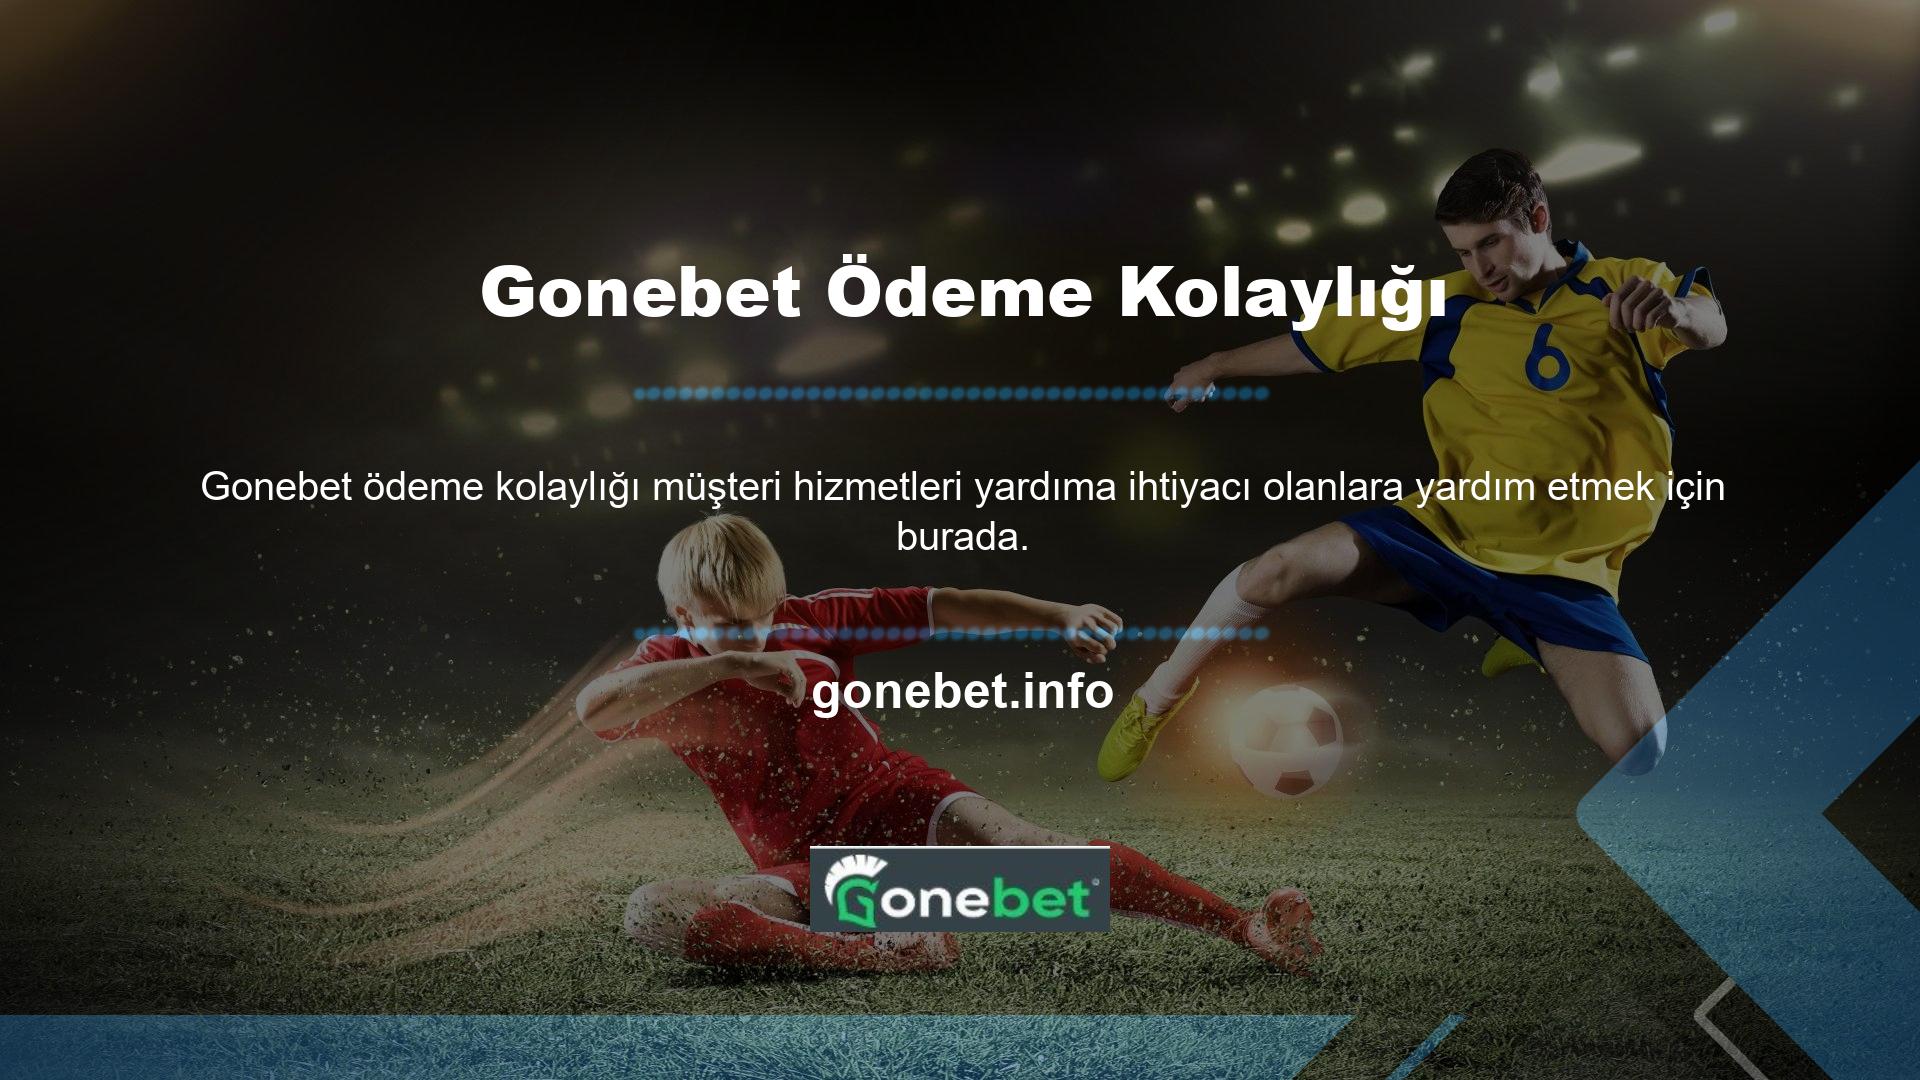 Gonebet Bahis, tüm kullanıcıların güvenli bir ortamda bahis oynayabilmelerini sağlamak için elinden geleni yapmaktadır